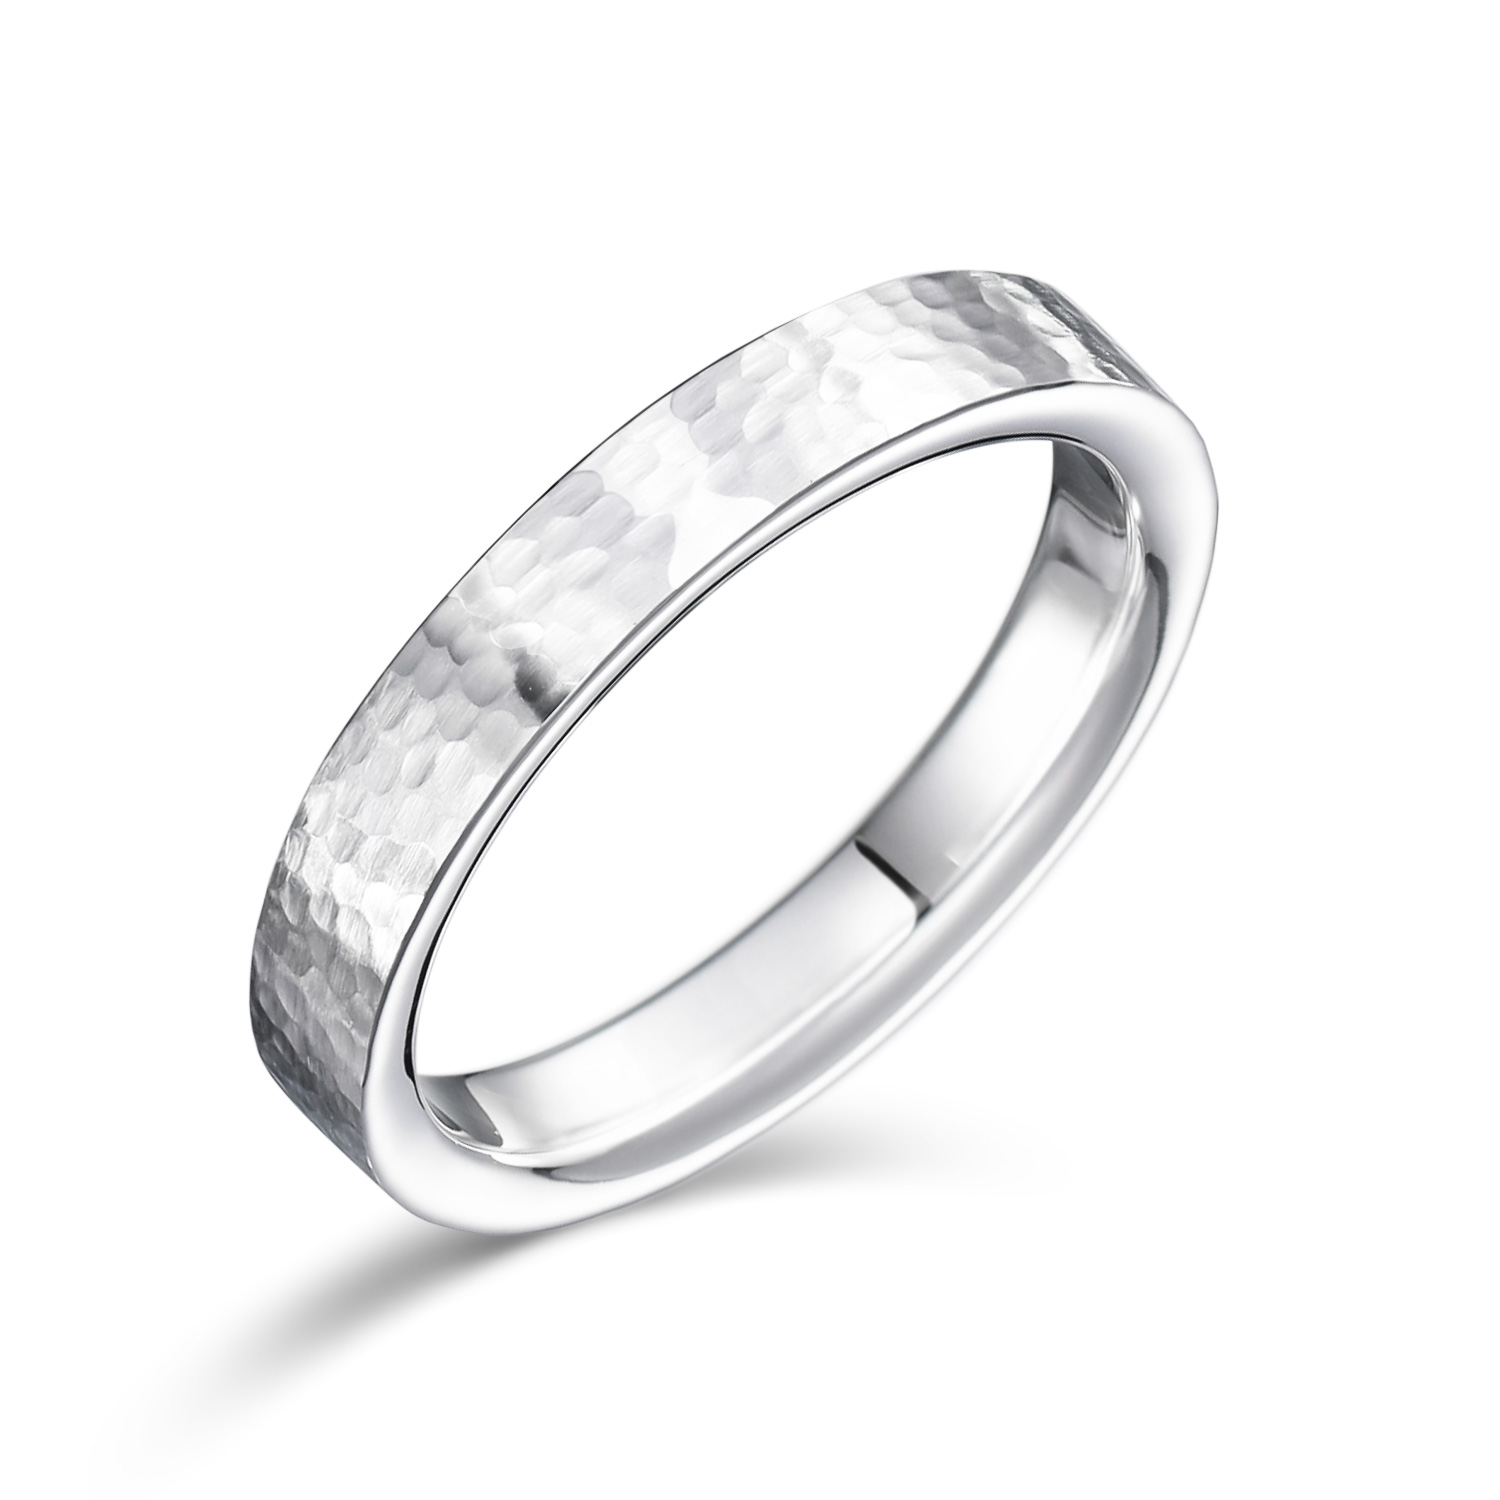 価額全部ショップの中に 『品質重視』指輪 リン53 ダイヤ 一粒 プラチナ D1.00ct ダイヤモンド リング